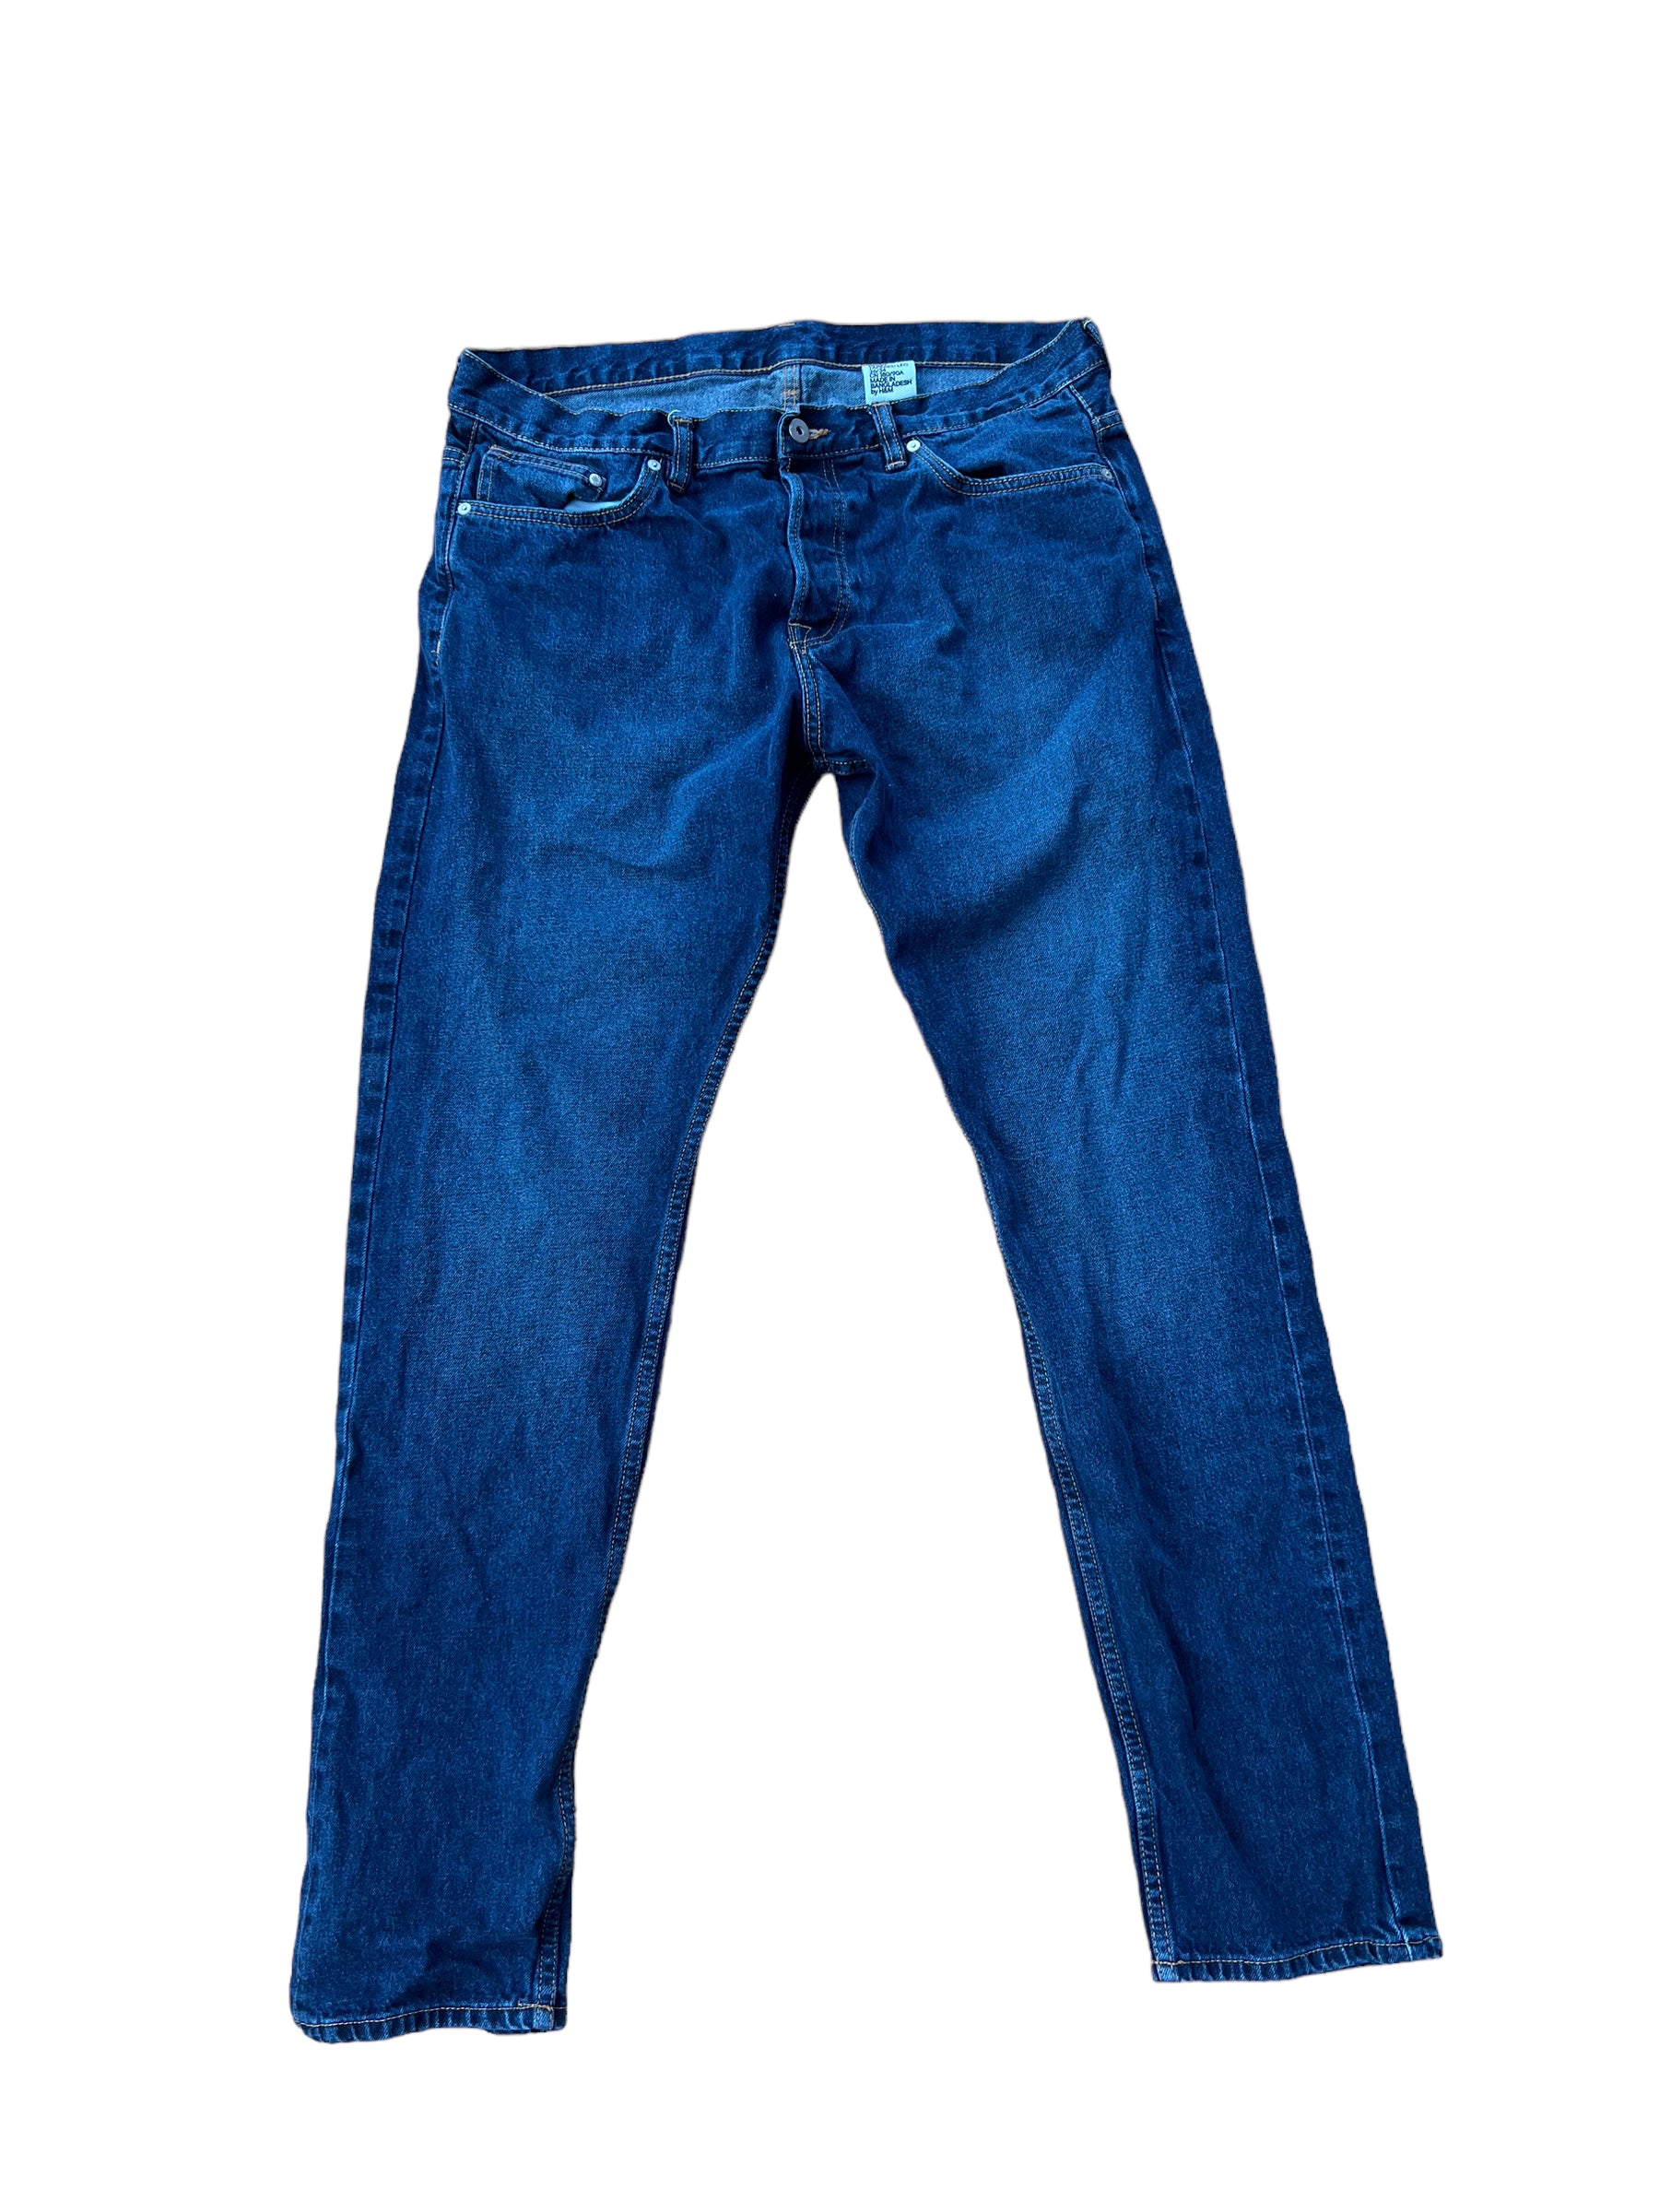 Mens &Denim Jeans